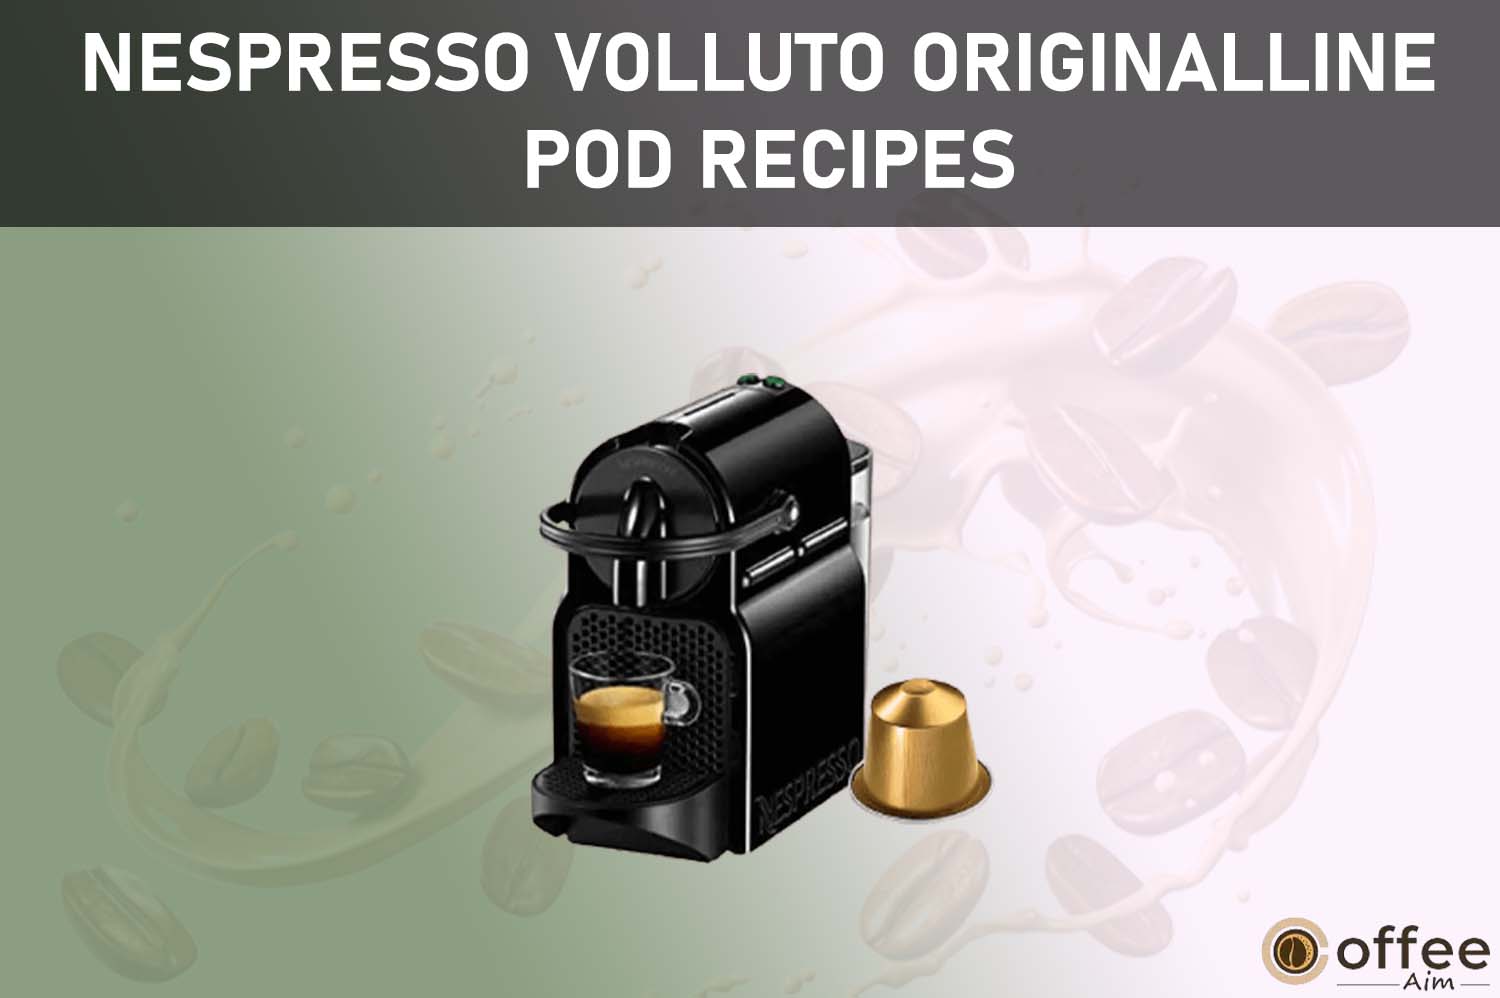 Featured image for the article "Nespresso Volluto OriginalLine Pod Recipes"